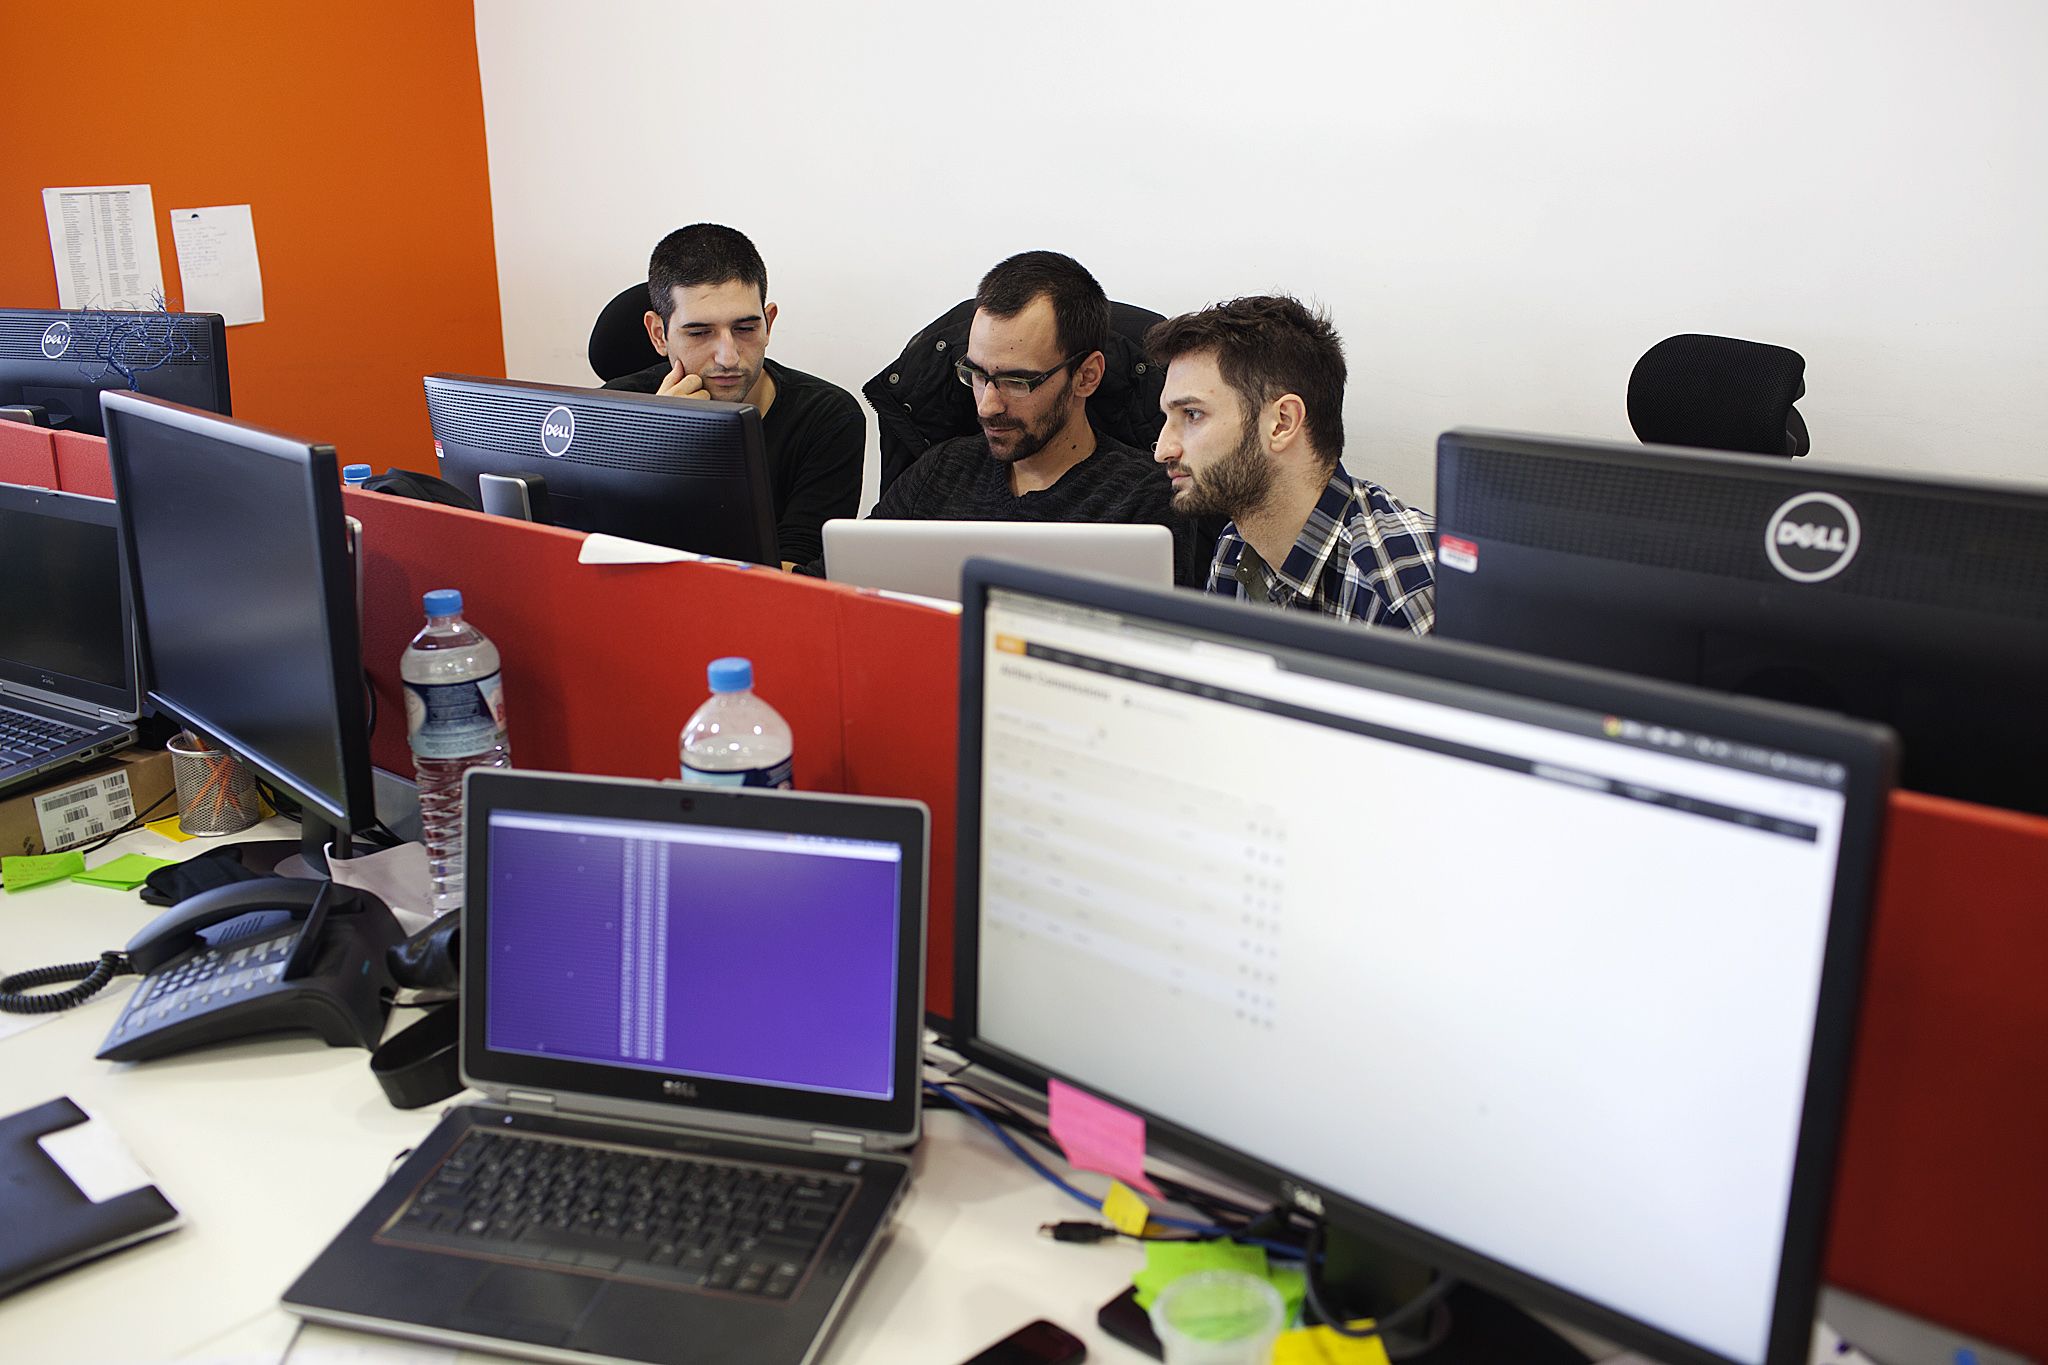 AFDEmp: Άνεργοι εκπαιδεύτηκαν και εργάζονται ως προγραμματιστές